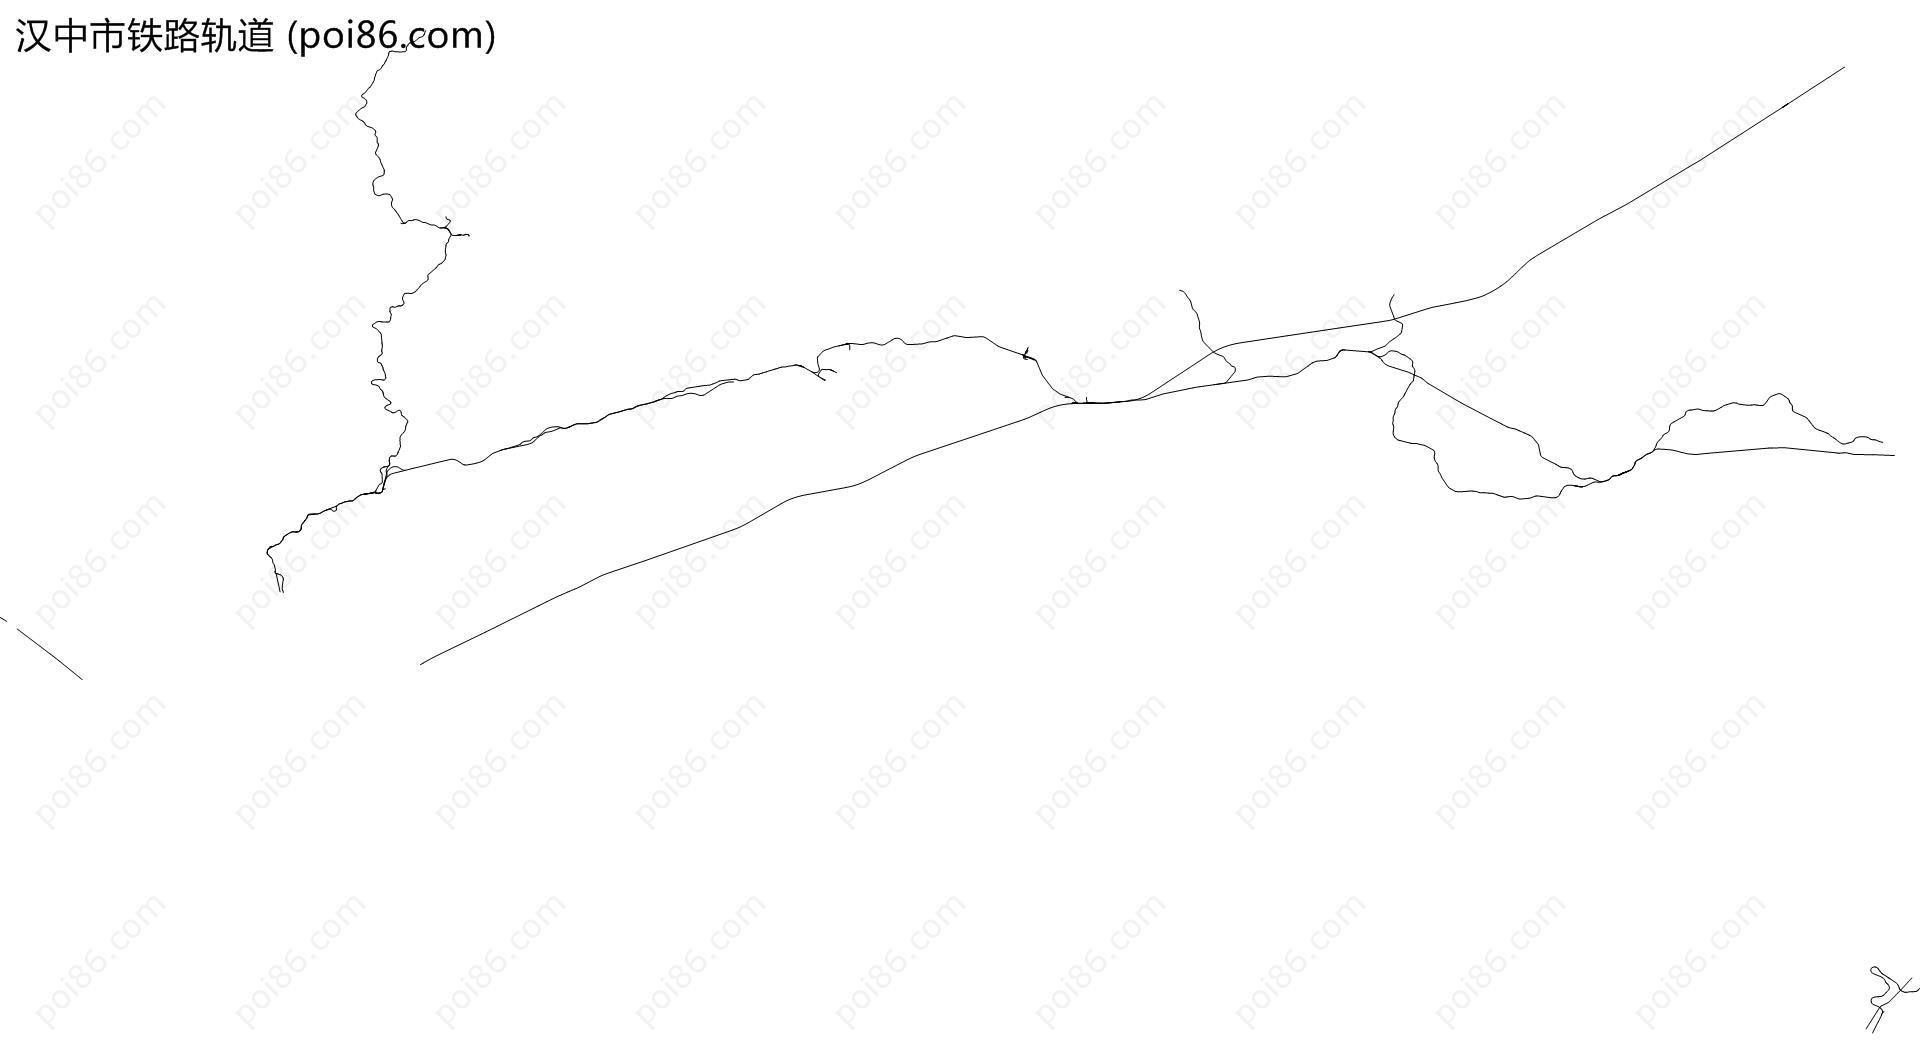 汉中市铁路轨道地图